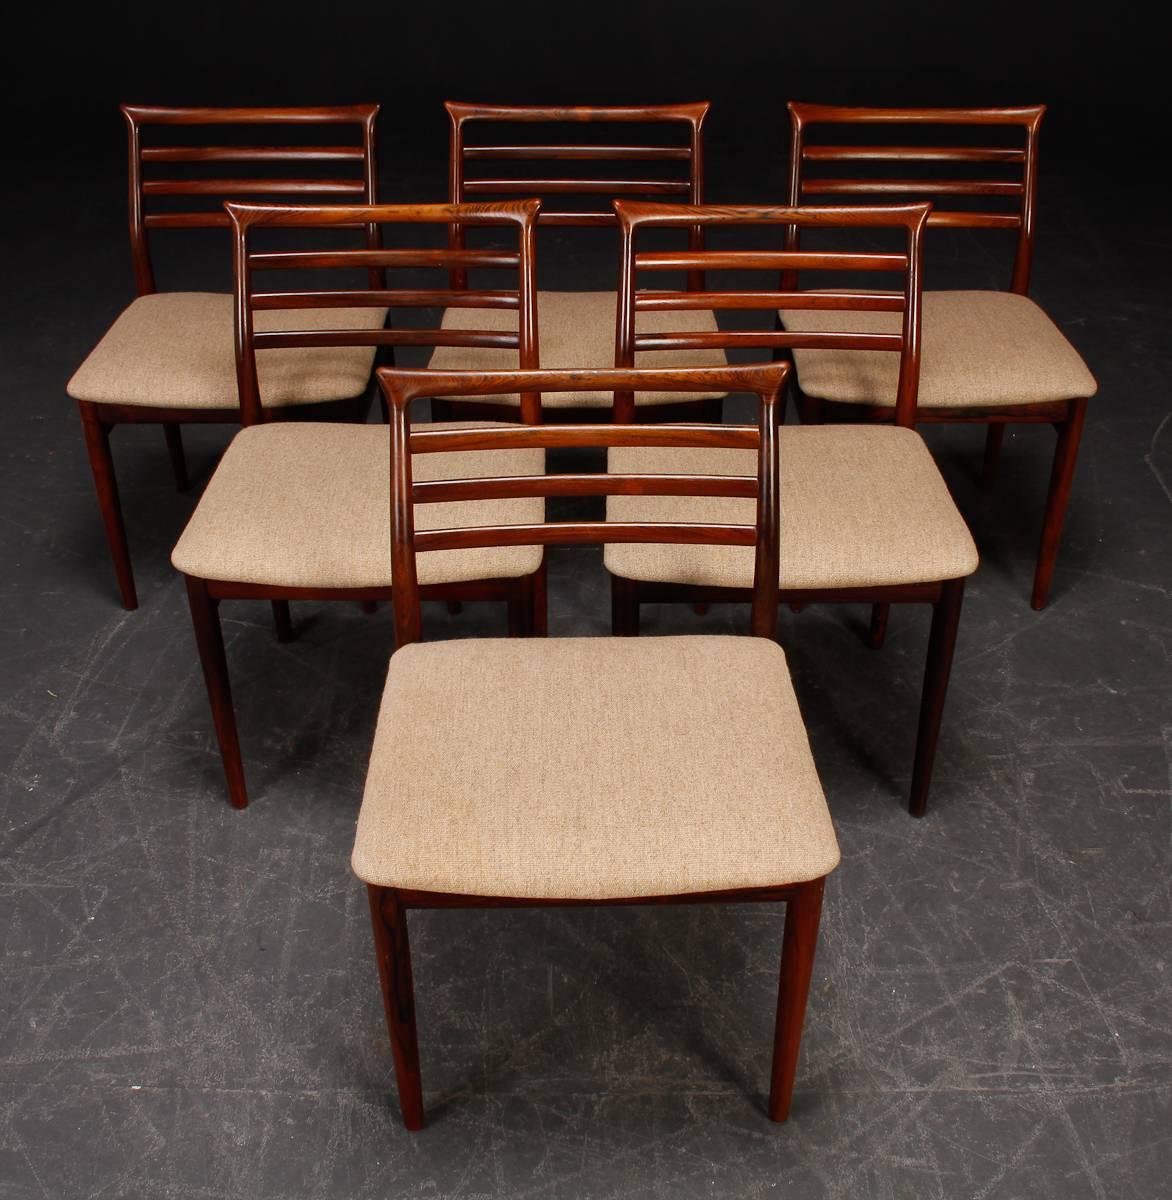 Esszimmerstühle, entworfen von Erling Torvits für die Sorø stolefabrik in Dänemark. Handgeschnitztes massives Hartholz.
Holz und Polstermöbel restauriert.
Lieferzeit ca. 3-4 Wochen!